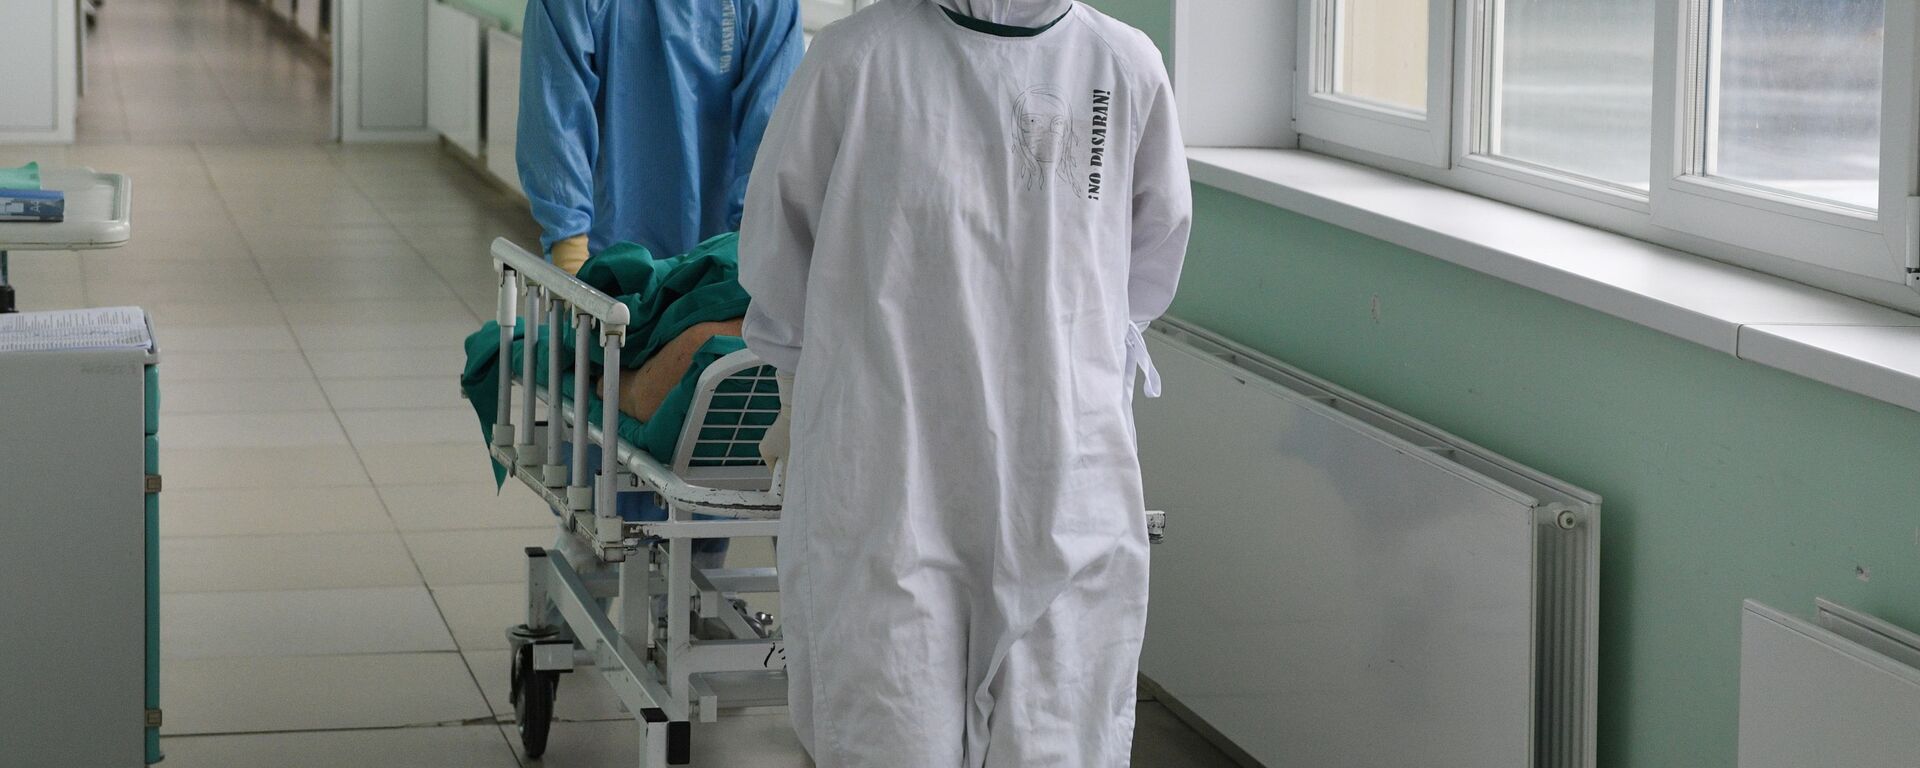 Медицинские работники везут пациента в ковид-госпитале - Sputnik Таджикистан, 1920, 28.11.2021